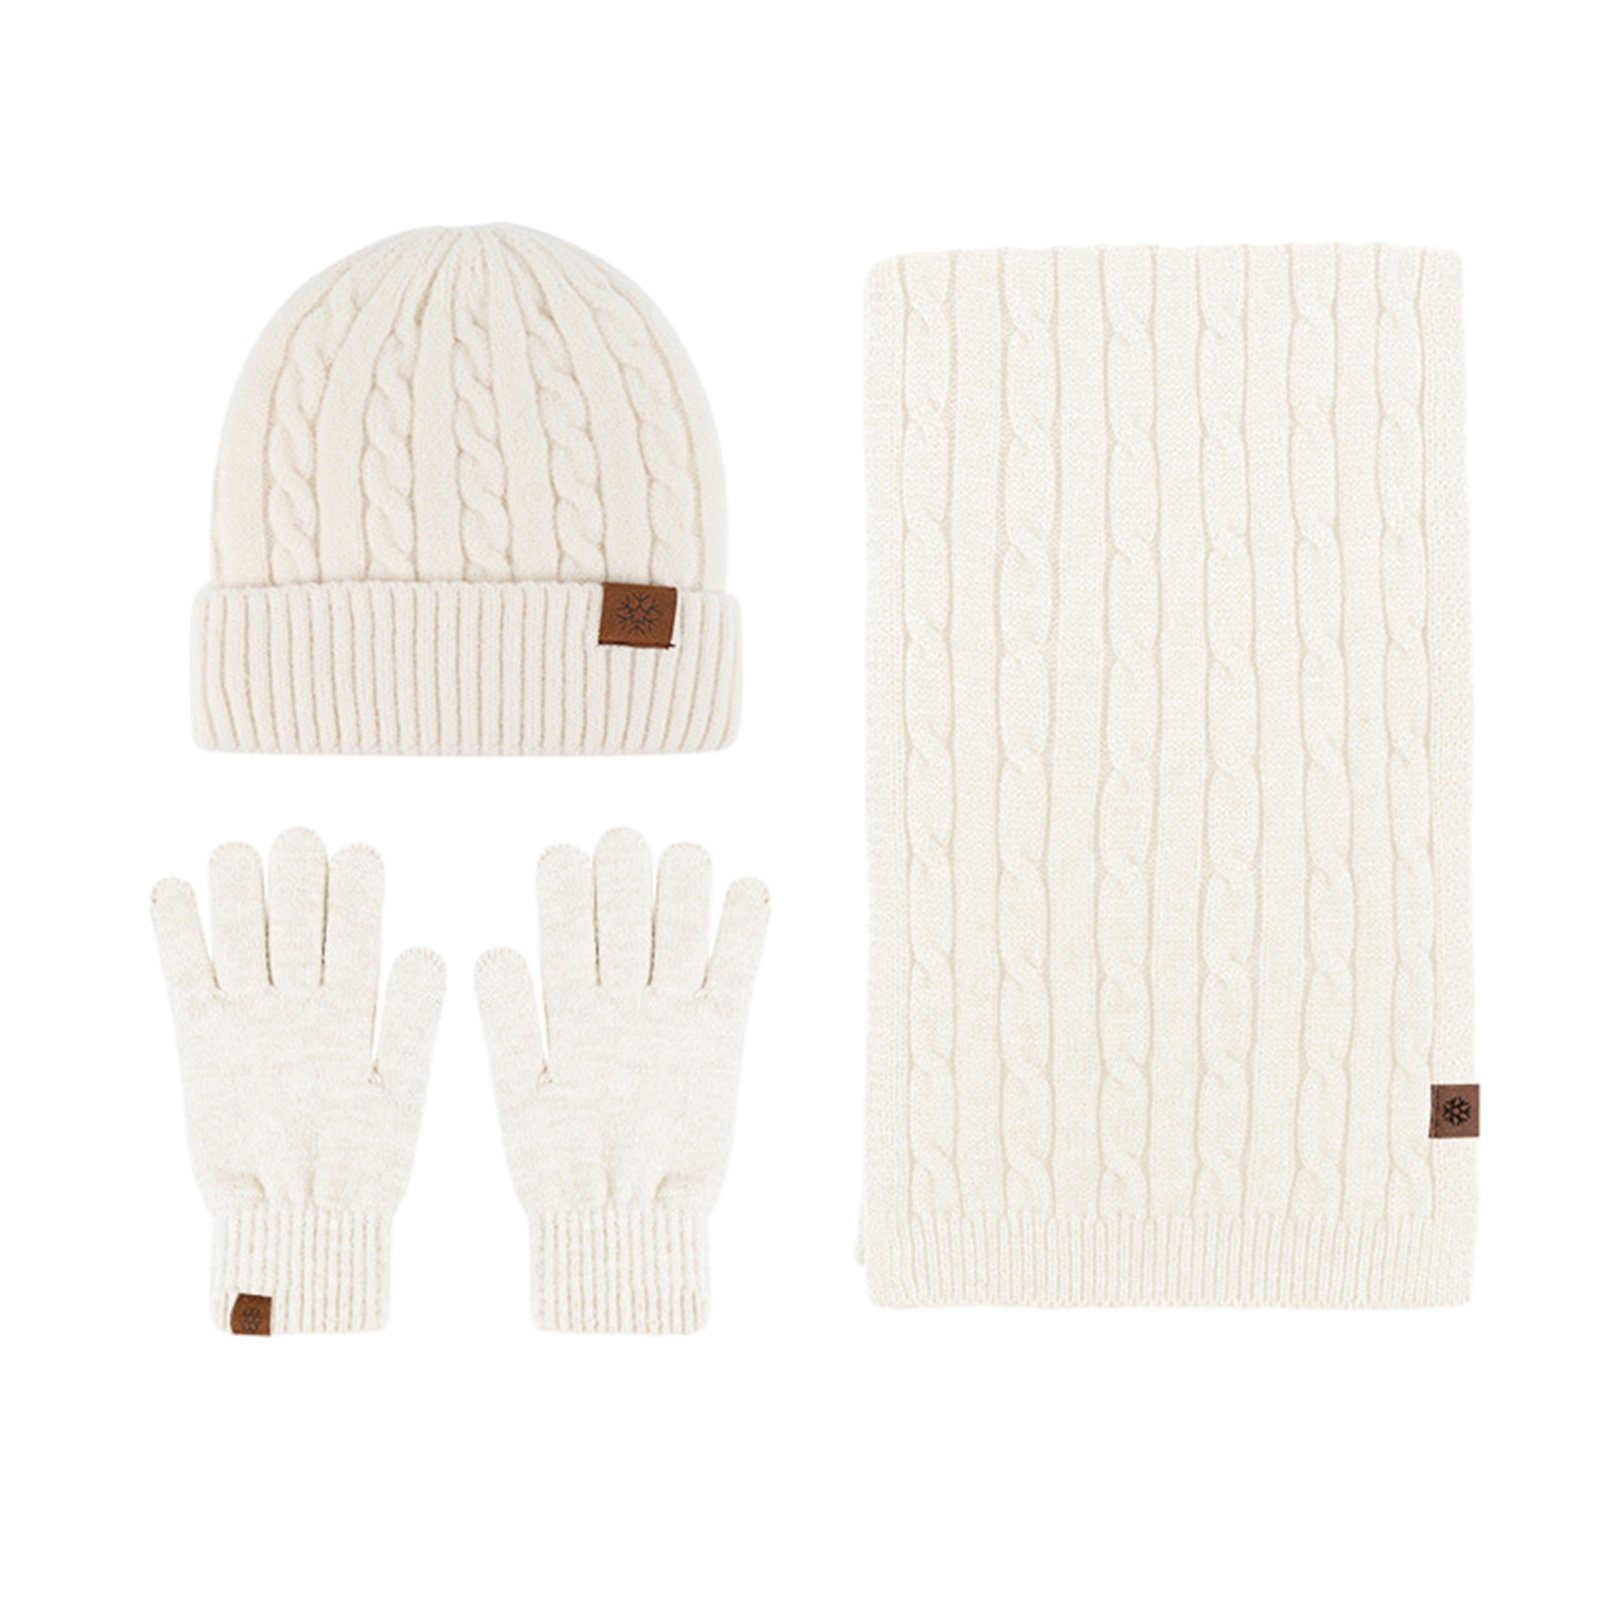 Rutaqian Beanie Winter Warm Beanie Mütze Schal und Touchscreen Handschuhe Set (Der Durchmesser des Hutes beträgt 22,5 cm, was etwas größer sein wird, Dreiteiliges, kältebeständiges, warmes Fleece-Set für den Außenbereich) für Herren und Damen (große Größe) Beige